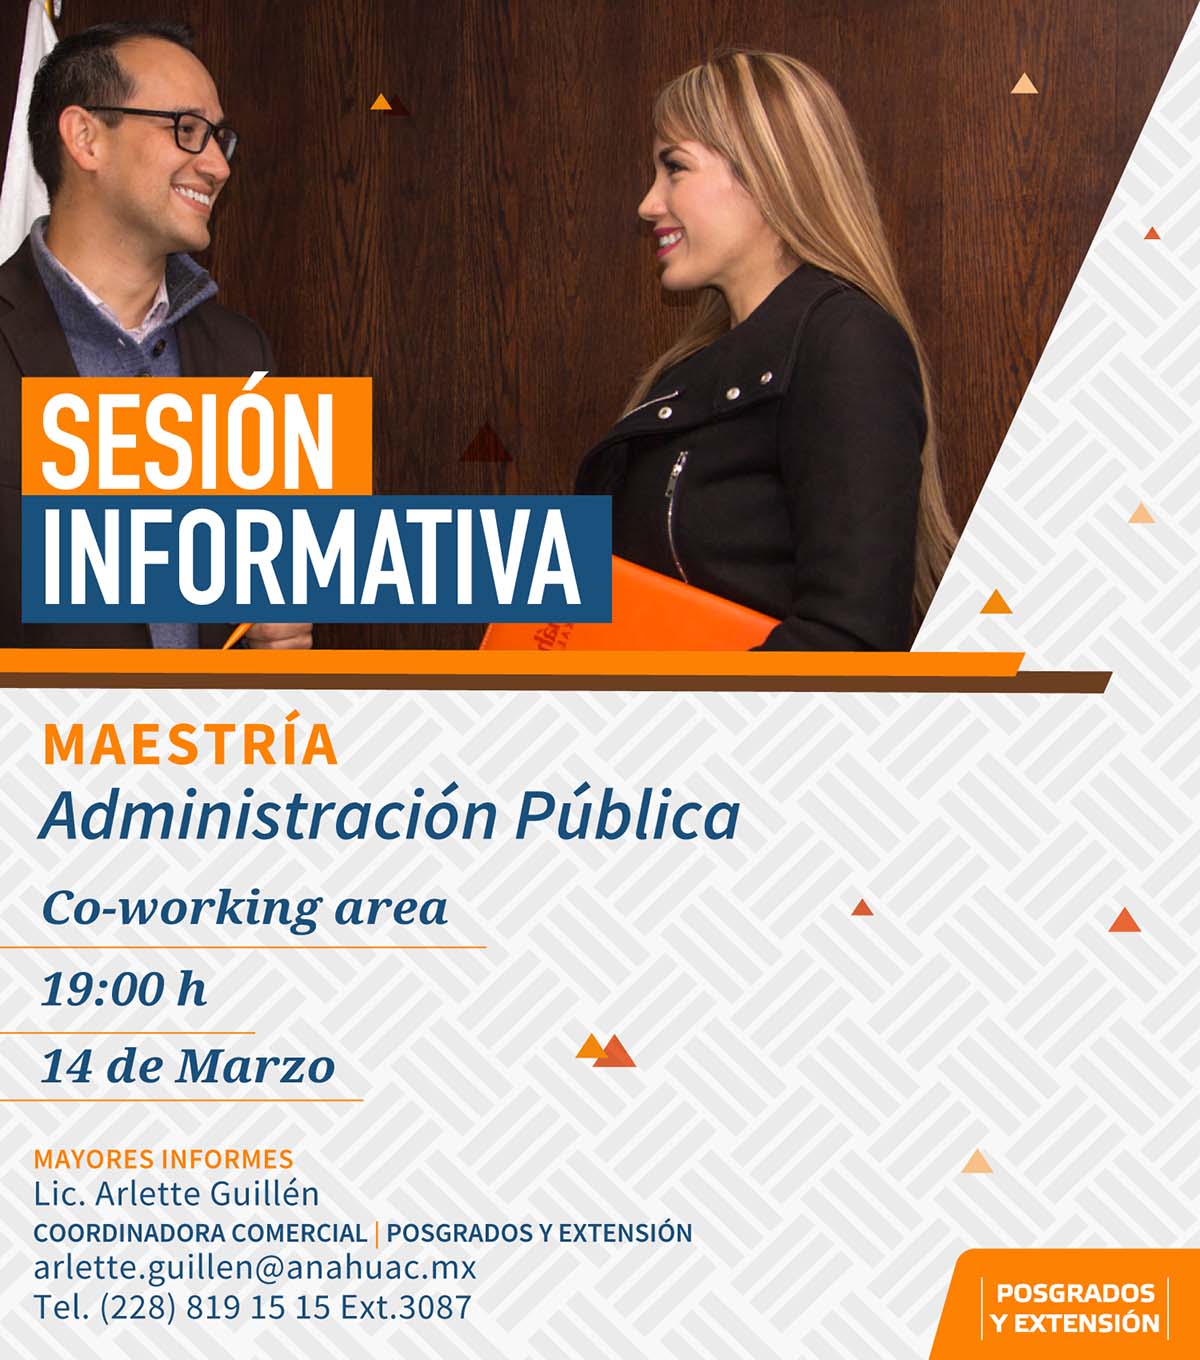 Maestría en Administración Pública: Sesión Informativa